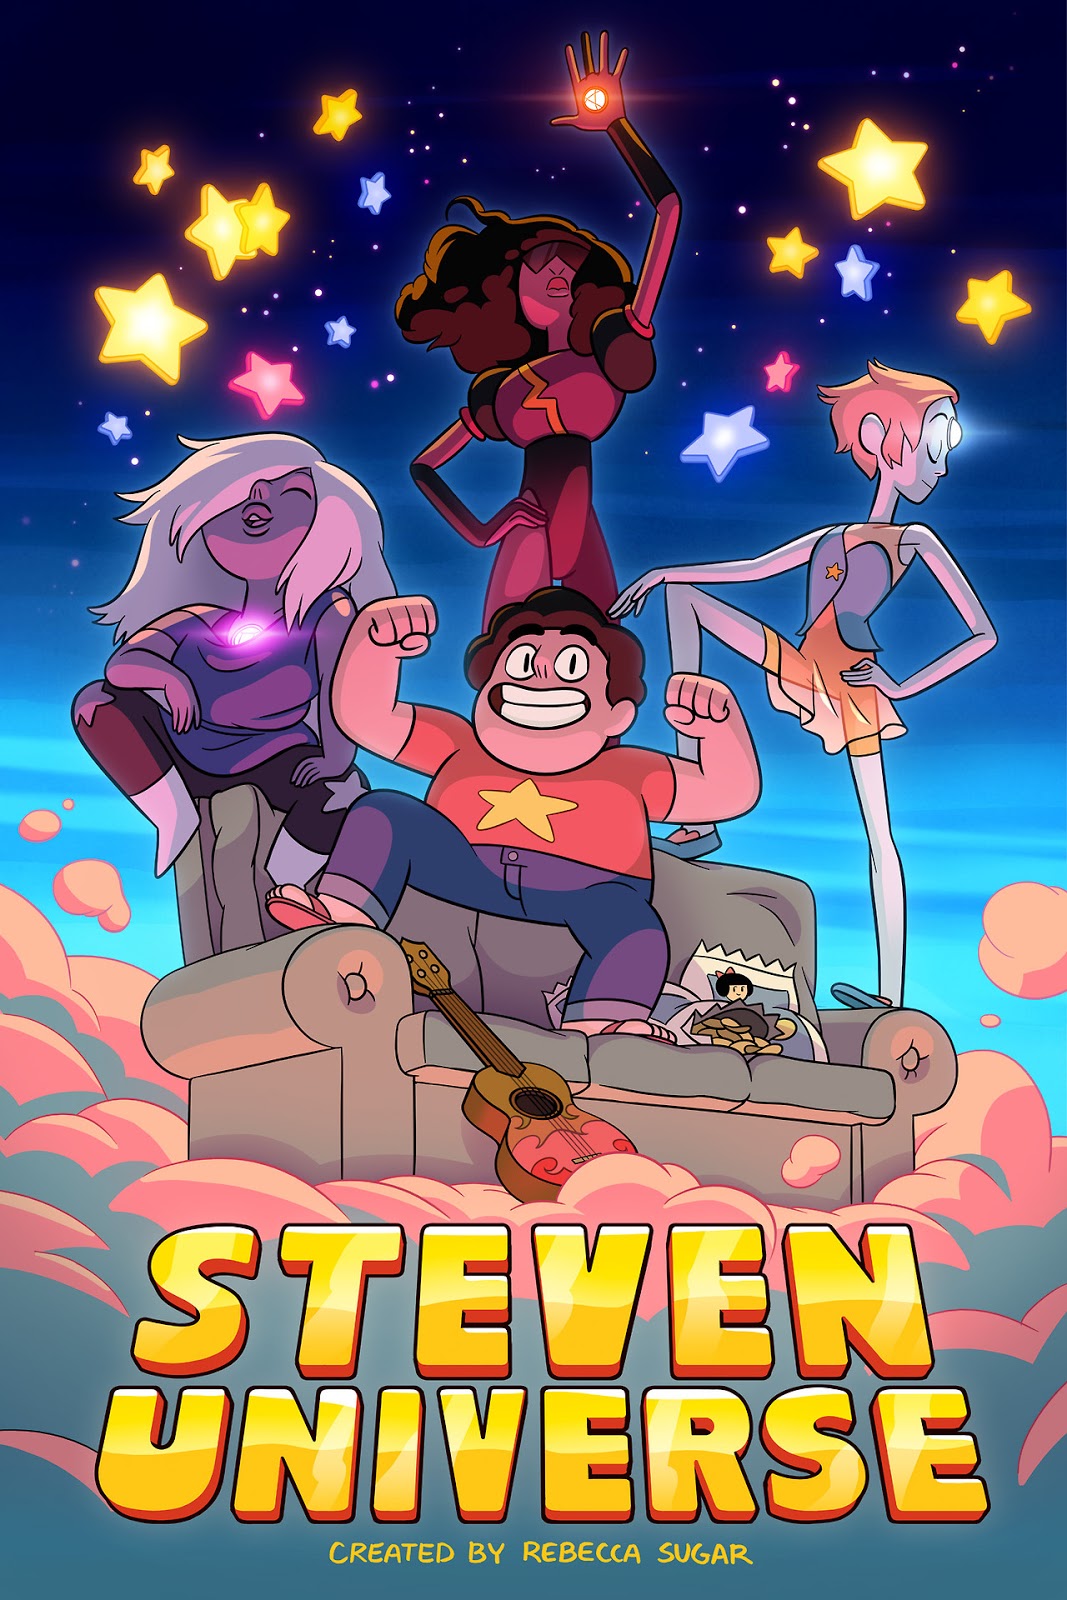 Steven Universo  Última temporada estreia em abril deste ano